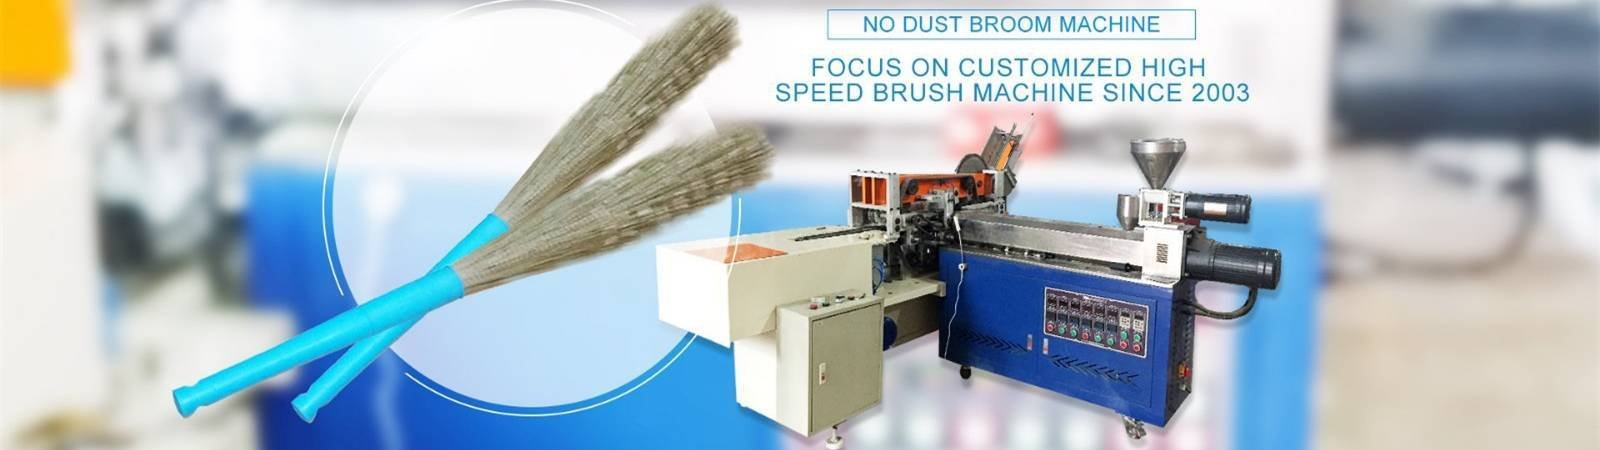 RD team-brush drilling and tufting machine, brush making machines-MX machinery-img-5